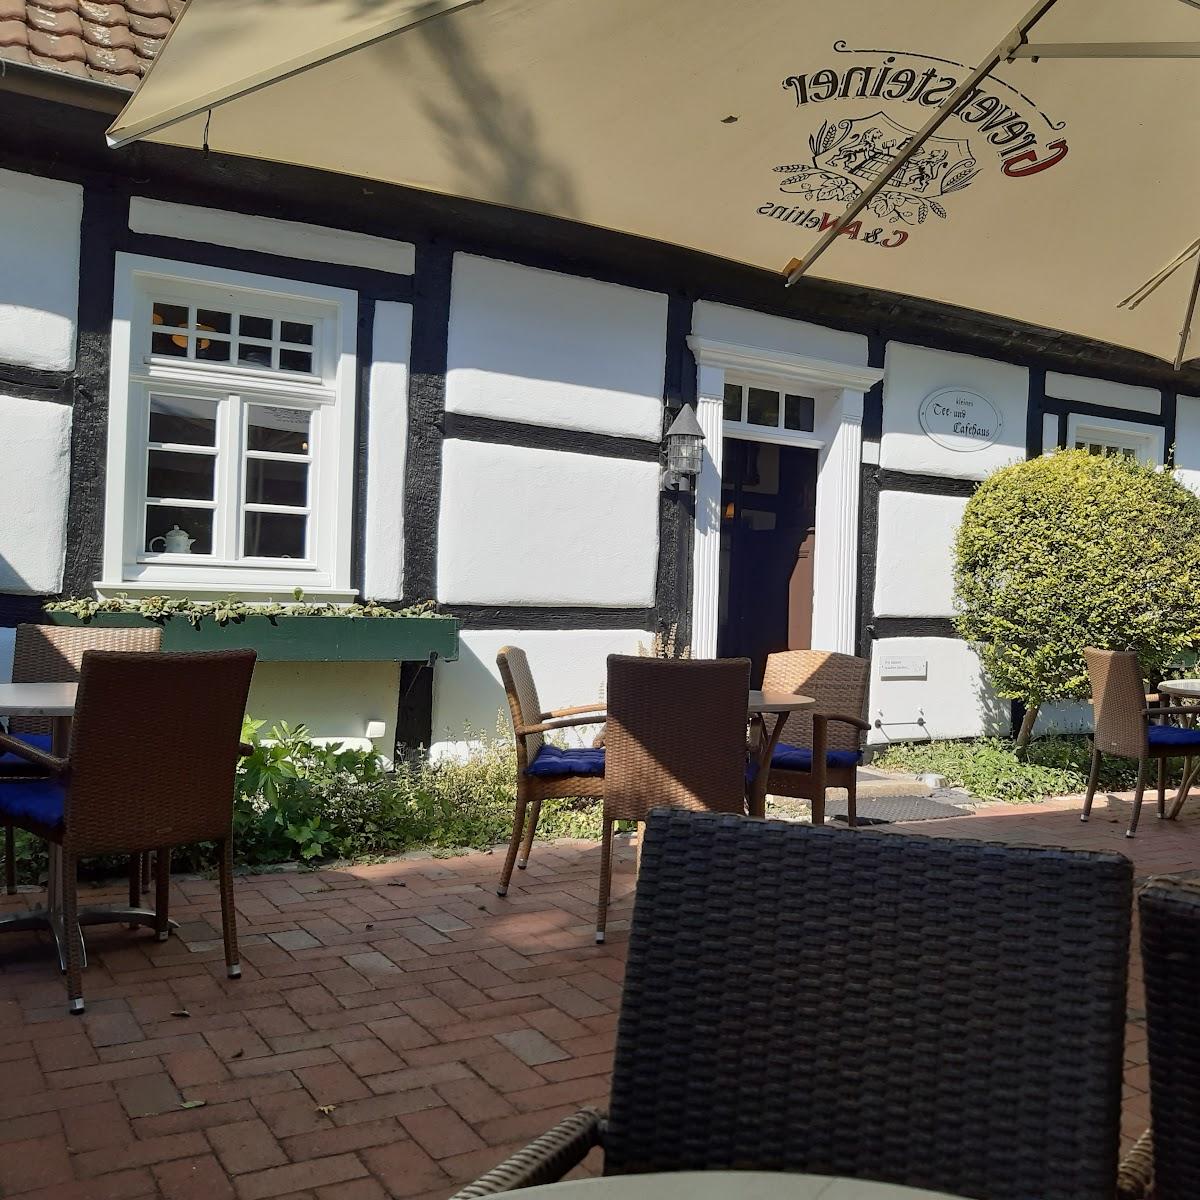 Restaurant "Kleines Tee und Caféhaus" in Bad Sassendorf